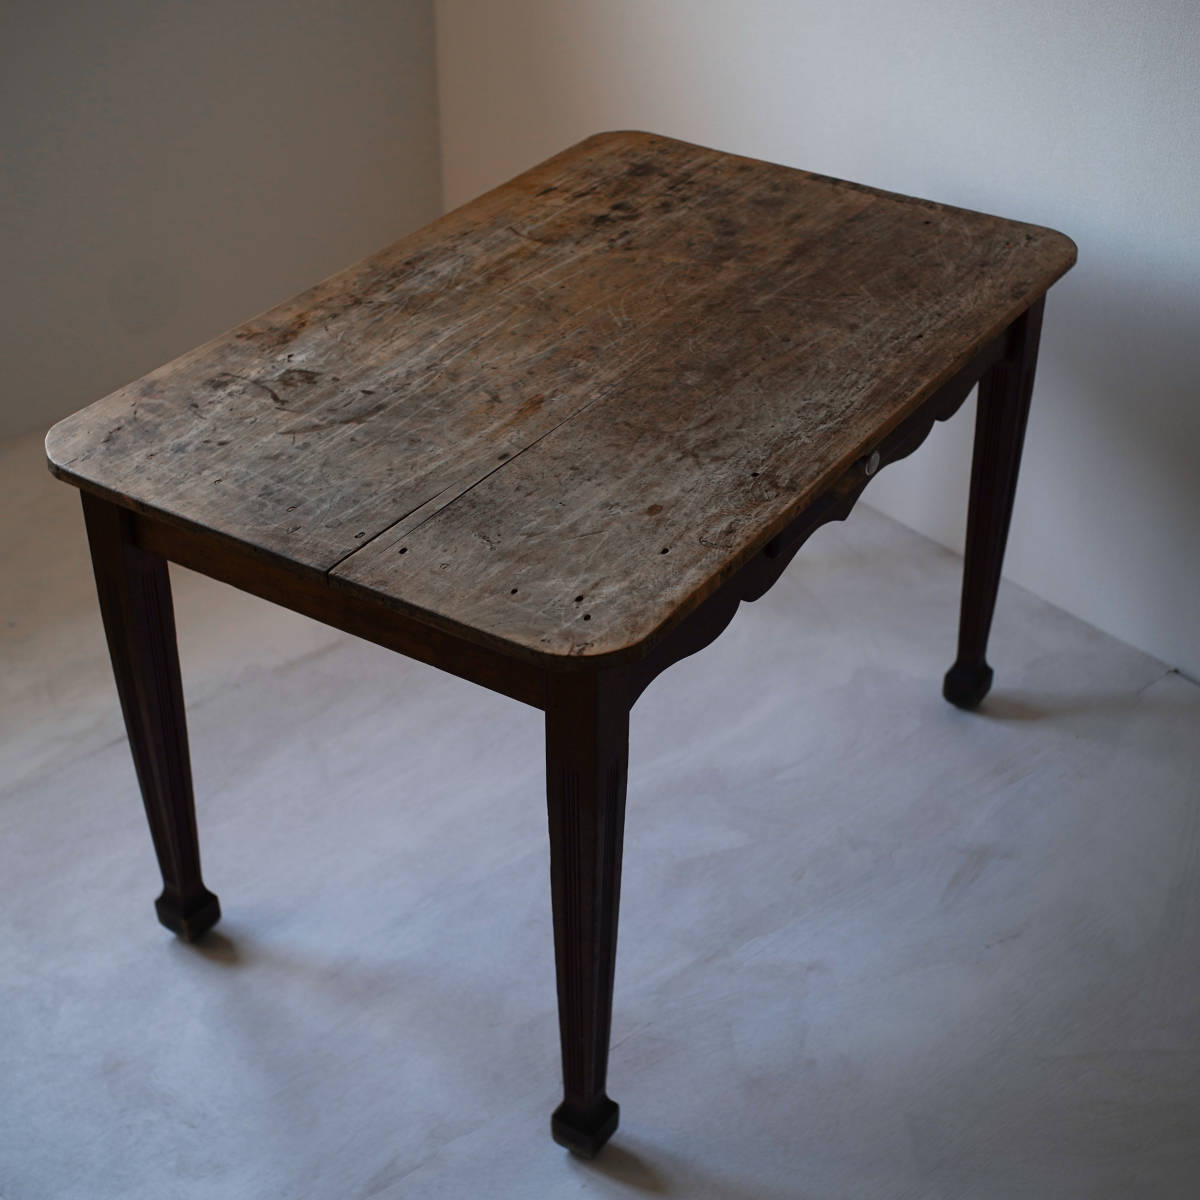 1800年代 フランス 古い無垢材のファーマーズテーブル / アンティーク 19世紀 ダイニングテーブル 作業台 家具 机 店舗什器 アトリエ _画像5